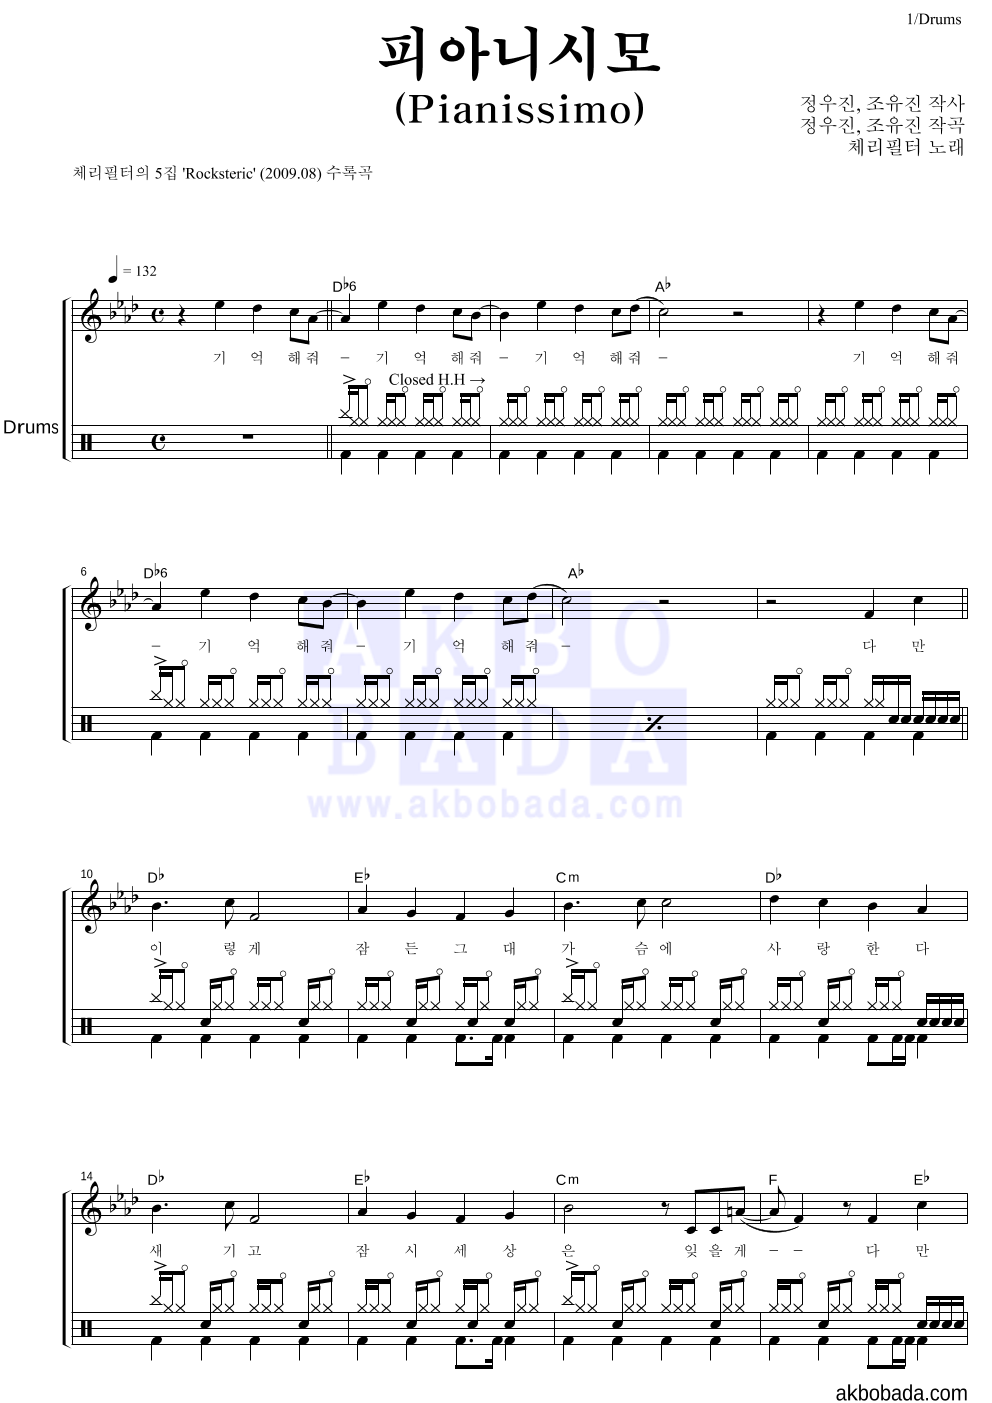 체리필터 - 피아니시모 (Pianissimo) 드럼 악보 